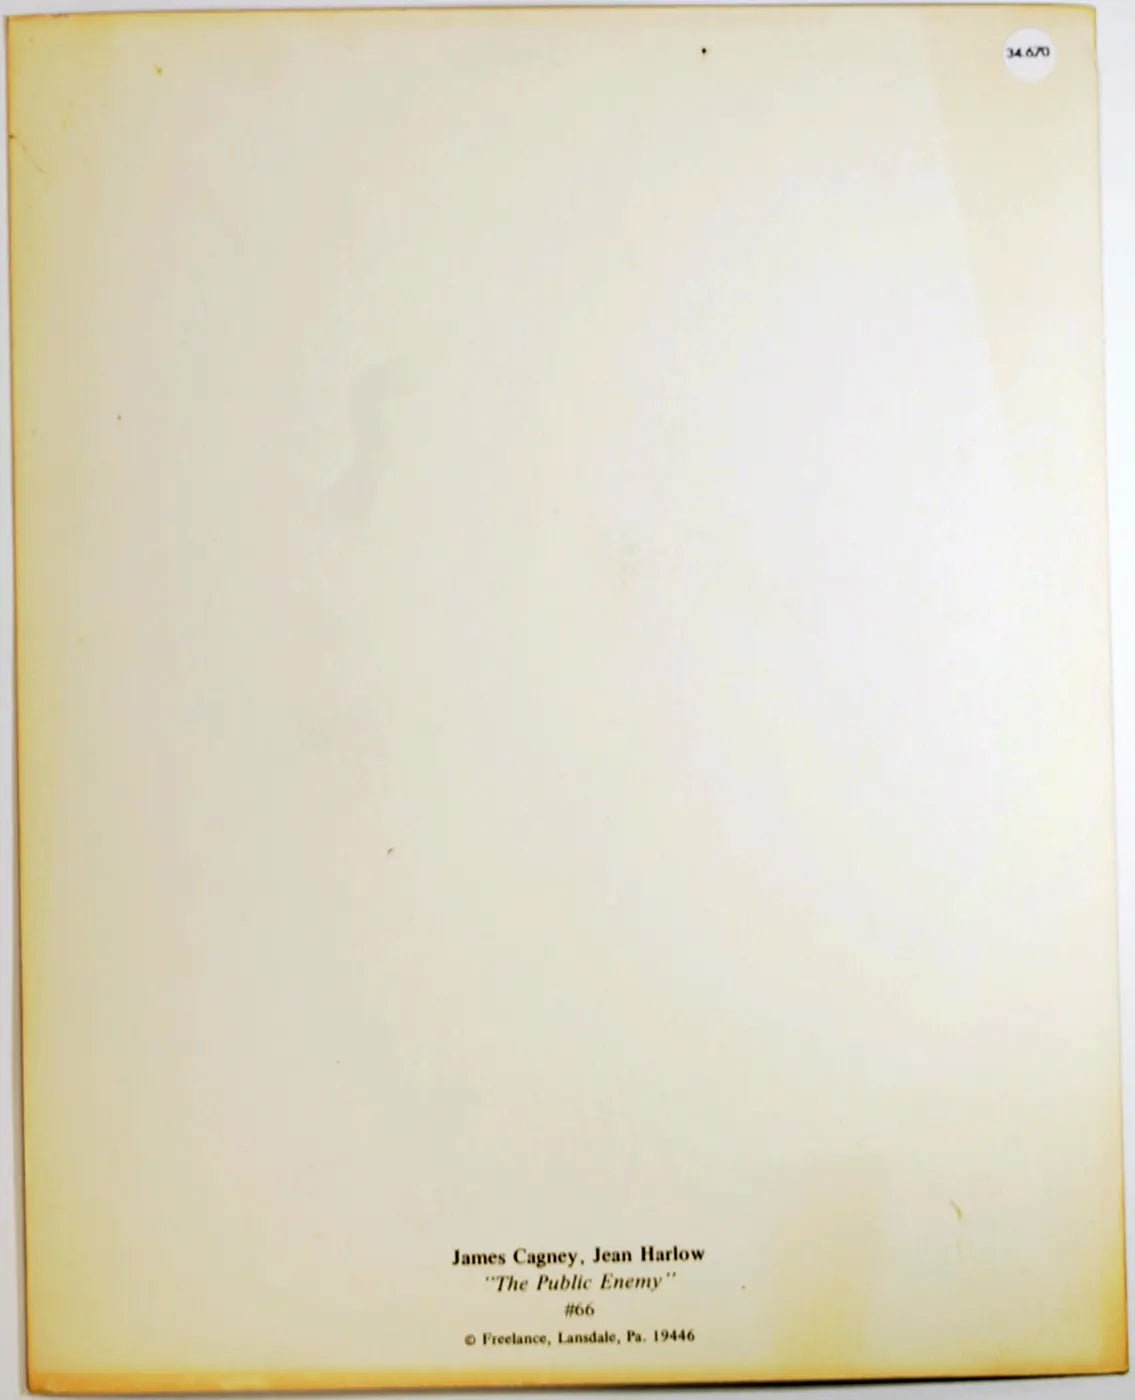 Film Nemico Pubblico 1931 Ft 34670 - Stampa 20x25 cm - Farabola Stampa ai sali d'argento